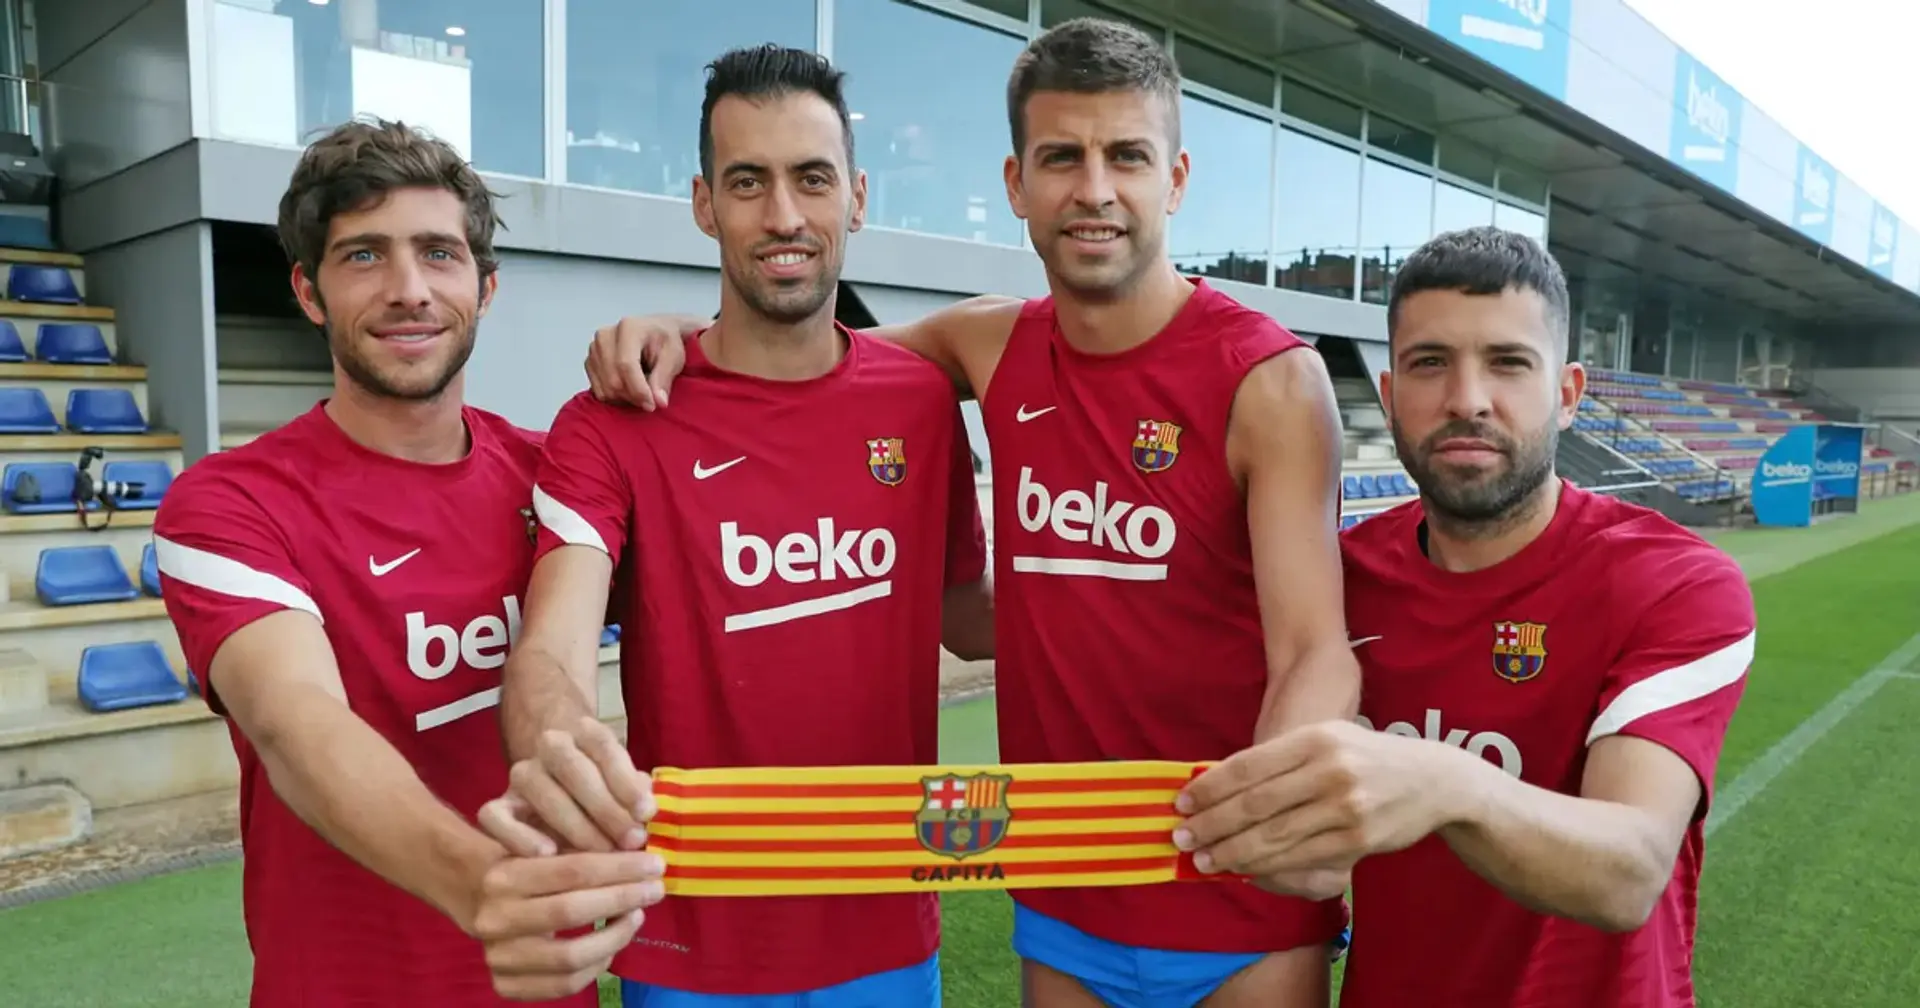 El Barça podría separarse de los 4 capitanes el próximo verano (fiabilidad: 5 estrellas)